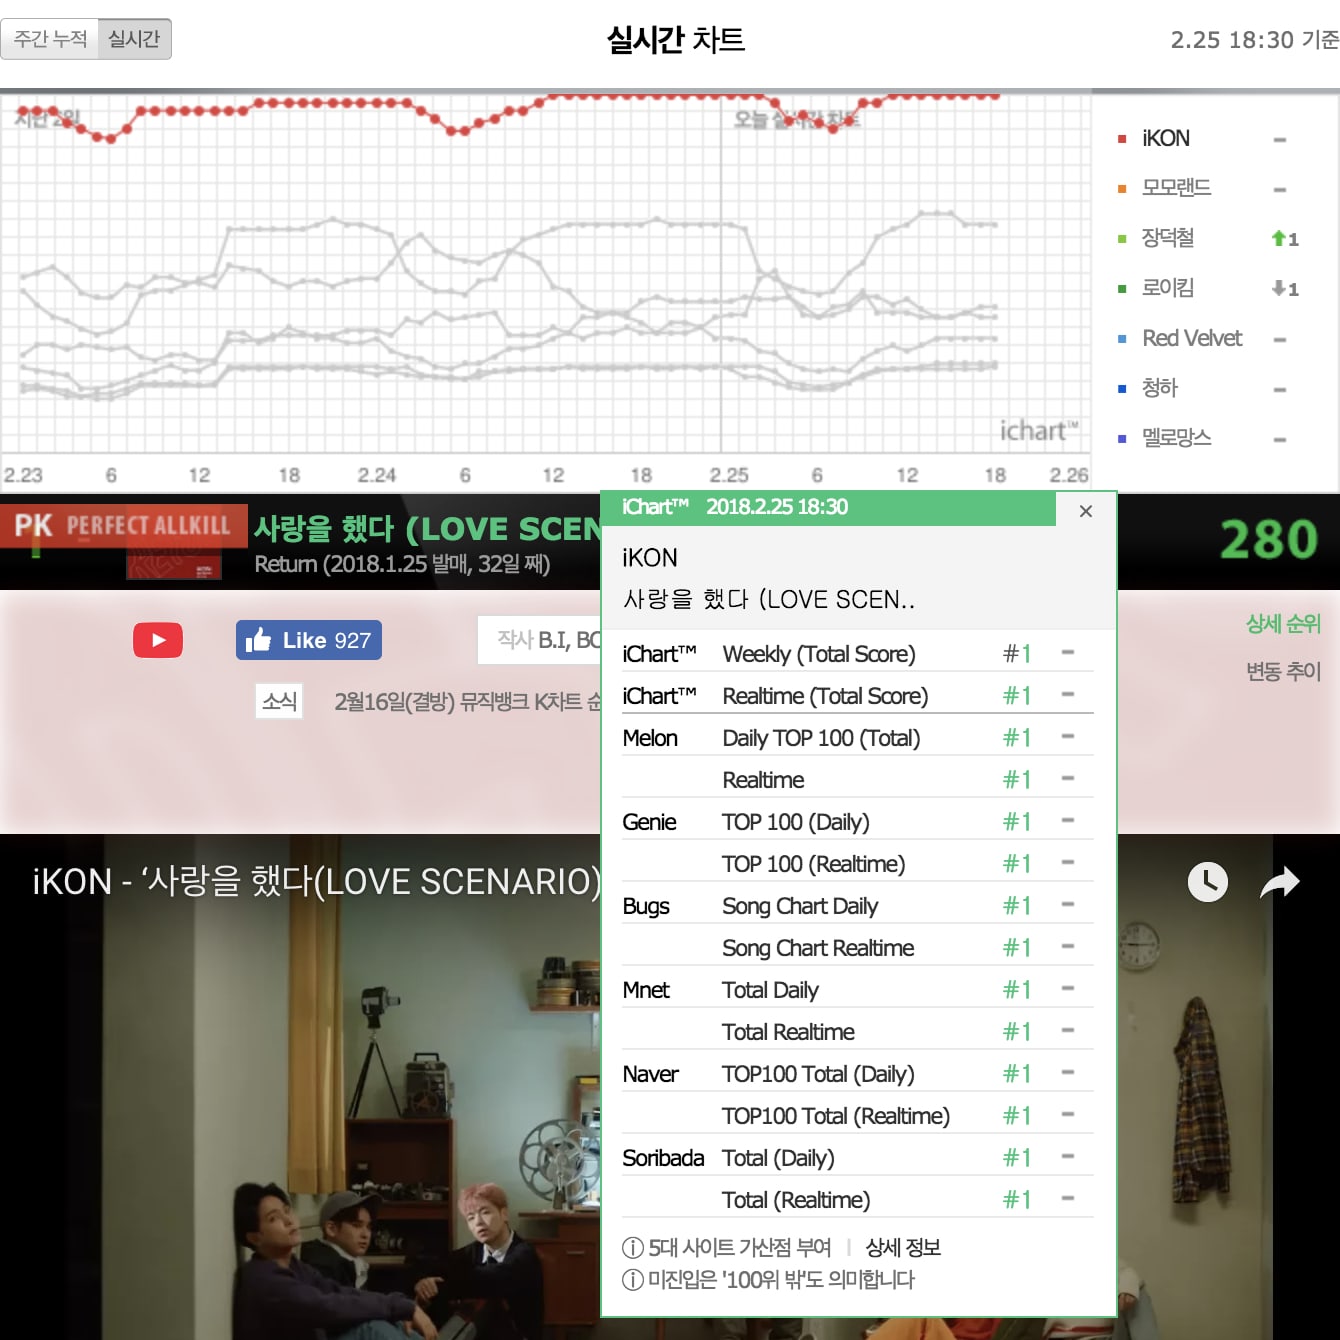 Долгоиграющий успех iKON с релизом "Love Scenario" в цифровых чартах